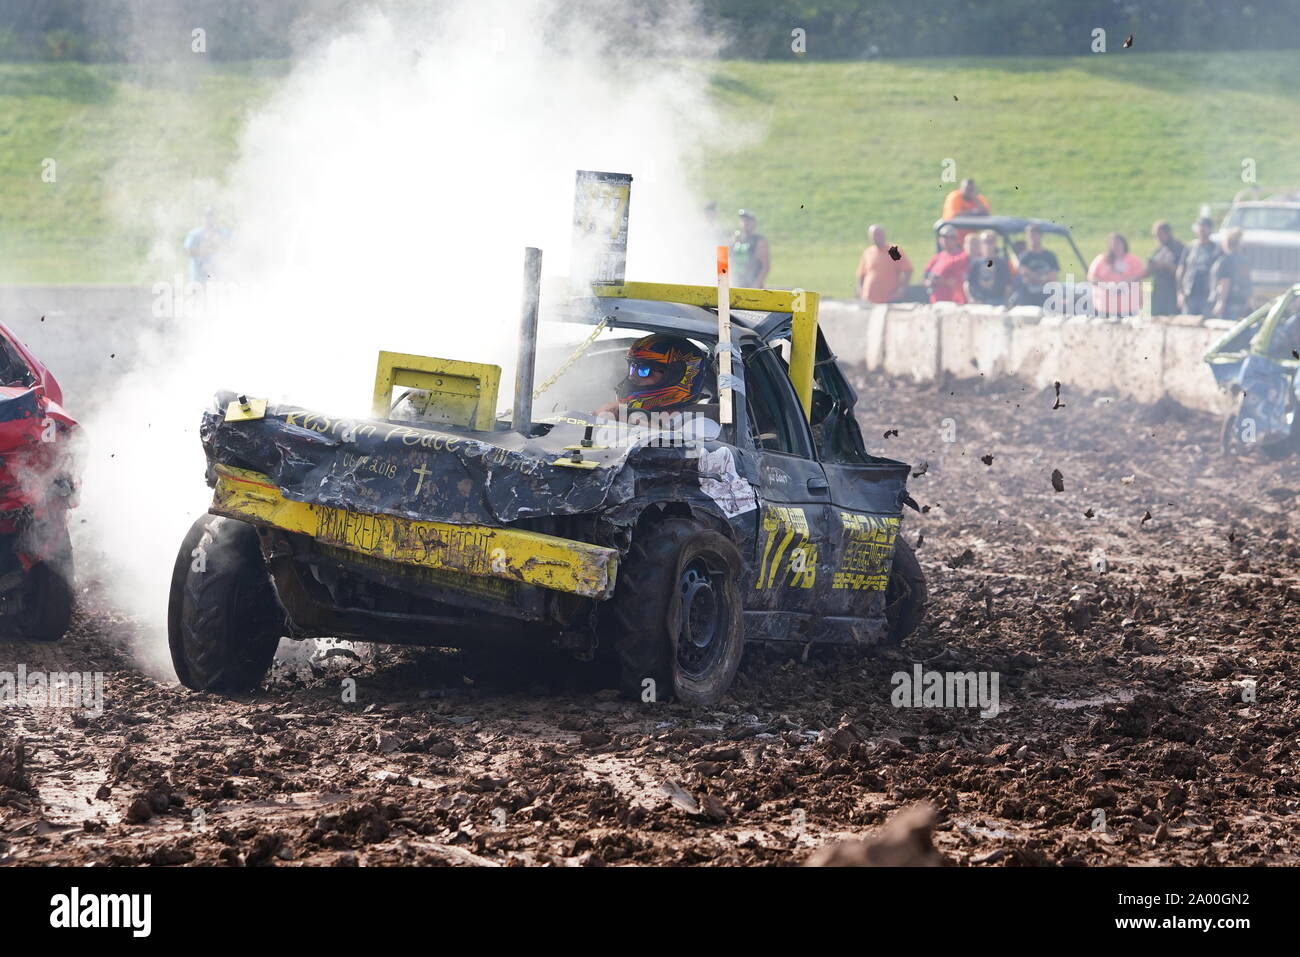 Hollywood Motorsports celebró su evento Demolition Derby Paws a la causa para ayudar a recaudar fondos para las sociedades humanas, Oshkosh, Wisconsin. Foto de stock